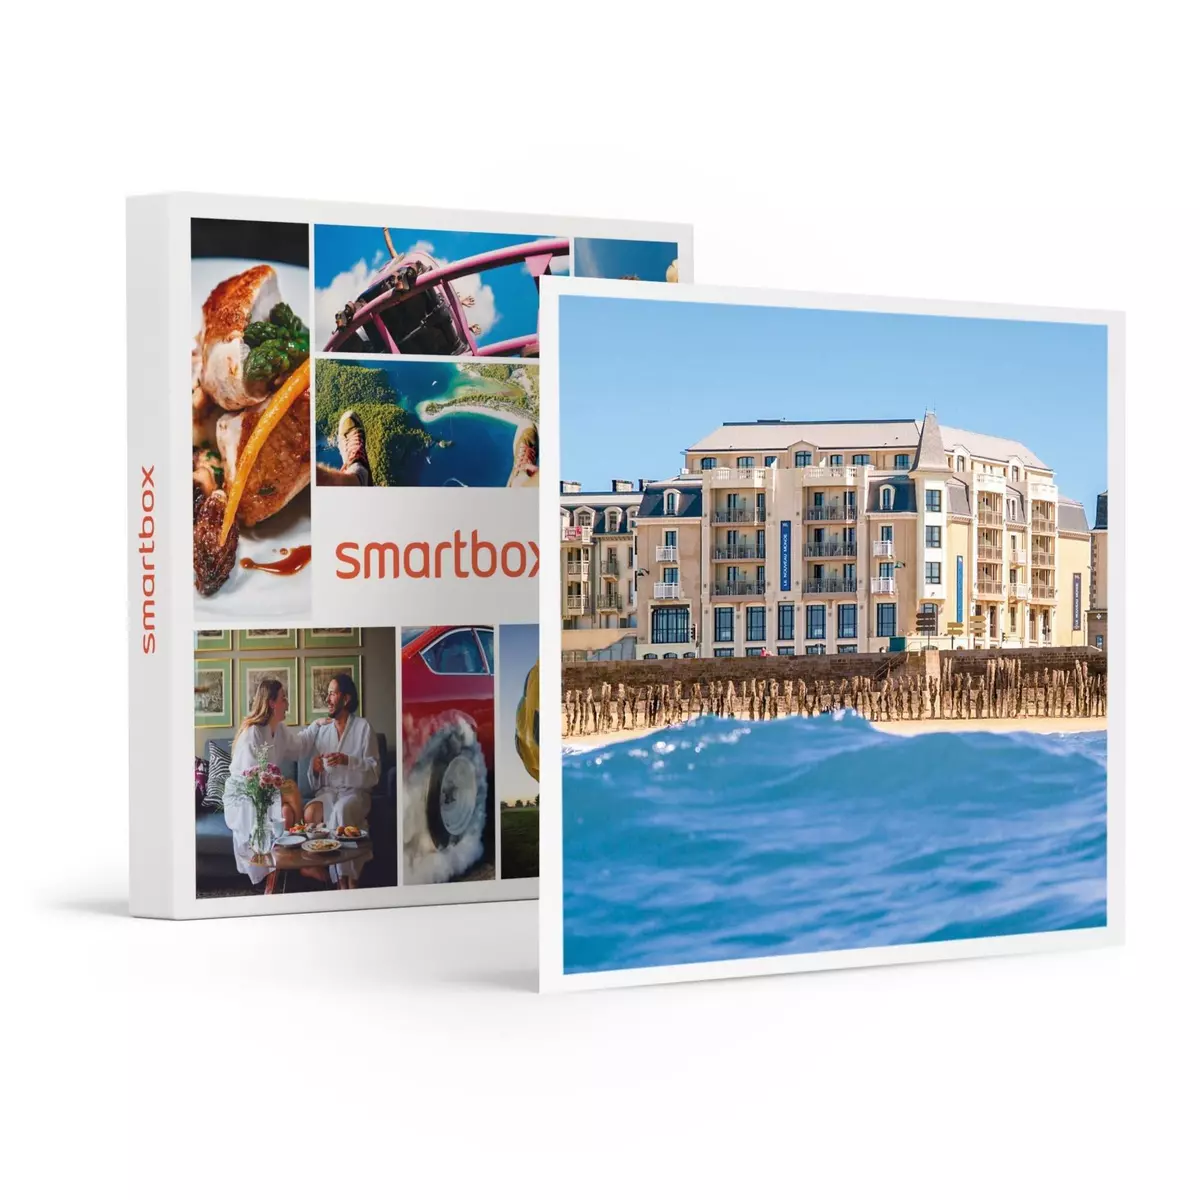 Smartbox Séjour bien-être en hôtel 4* avec accès spa à Saint-Malo - Coffret Cadeau Séjour